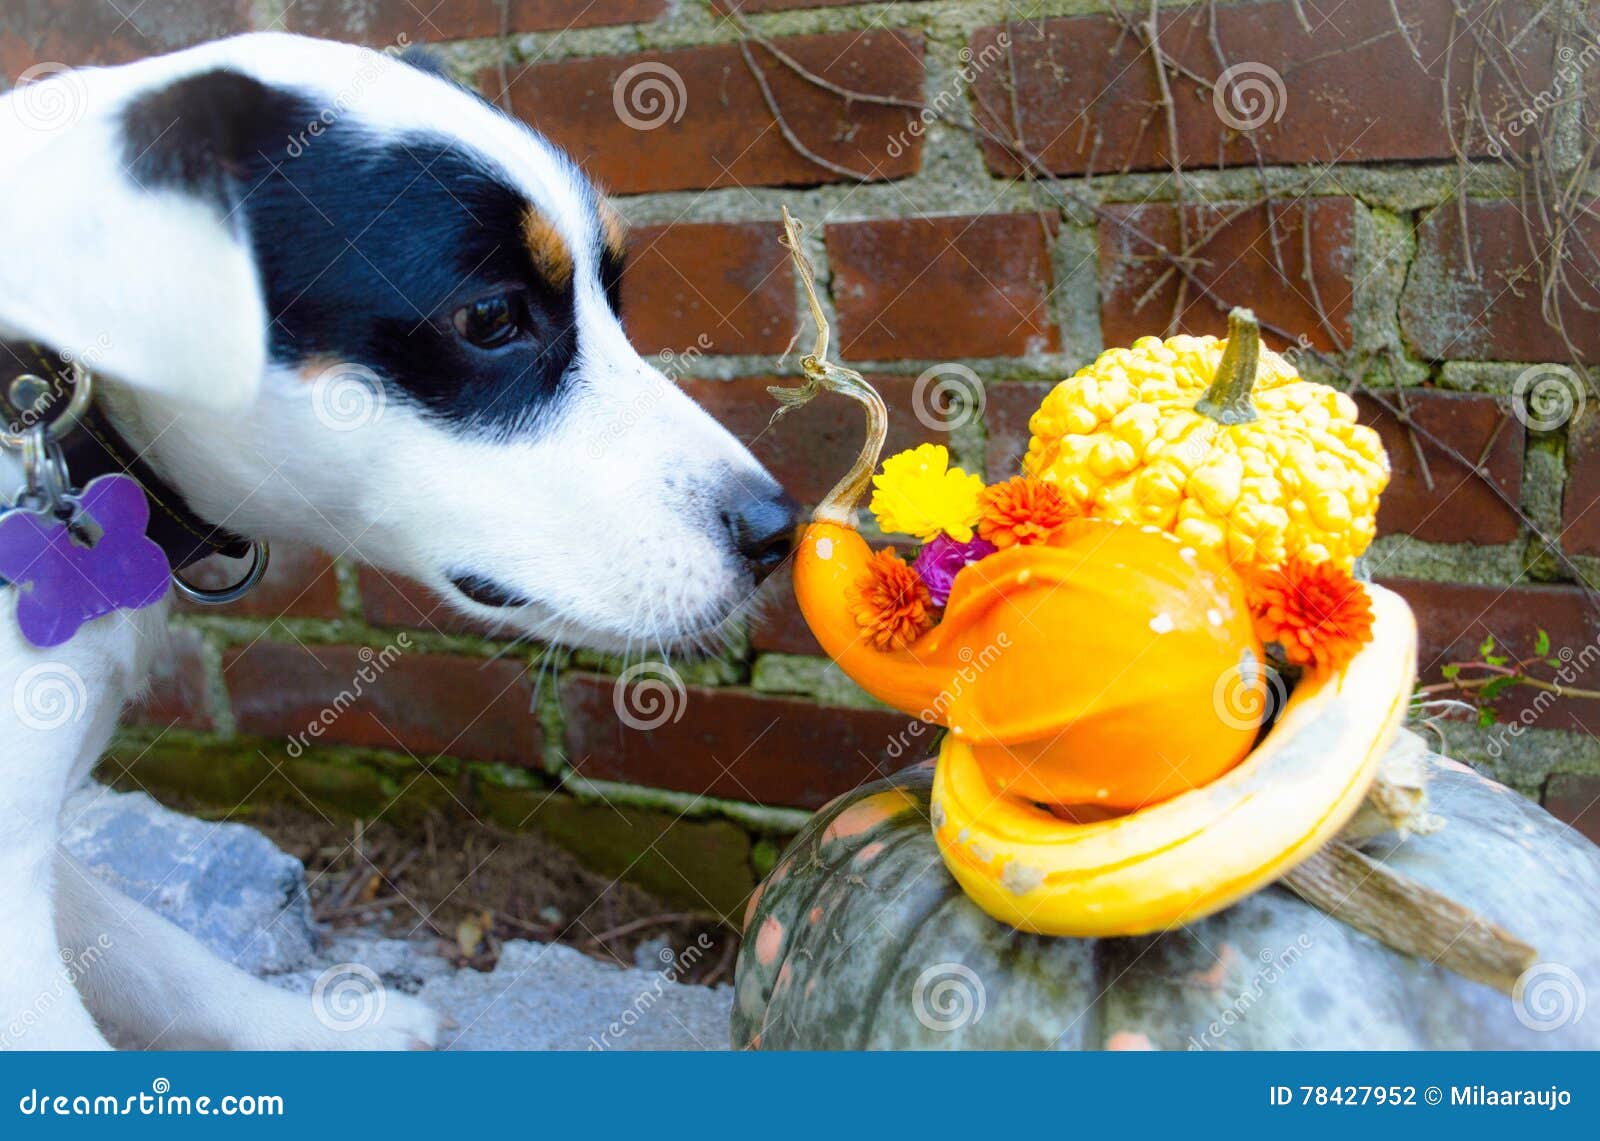 thanksgiving dog sniffs pumpkin and flower centerpiece